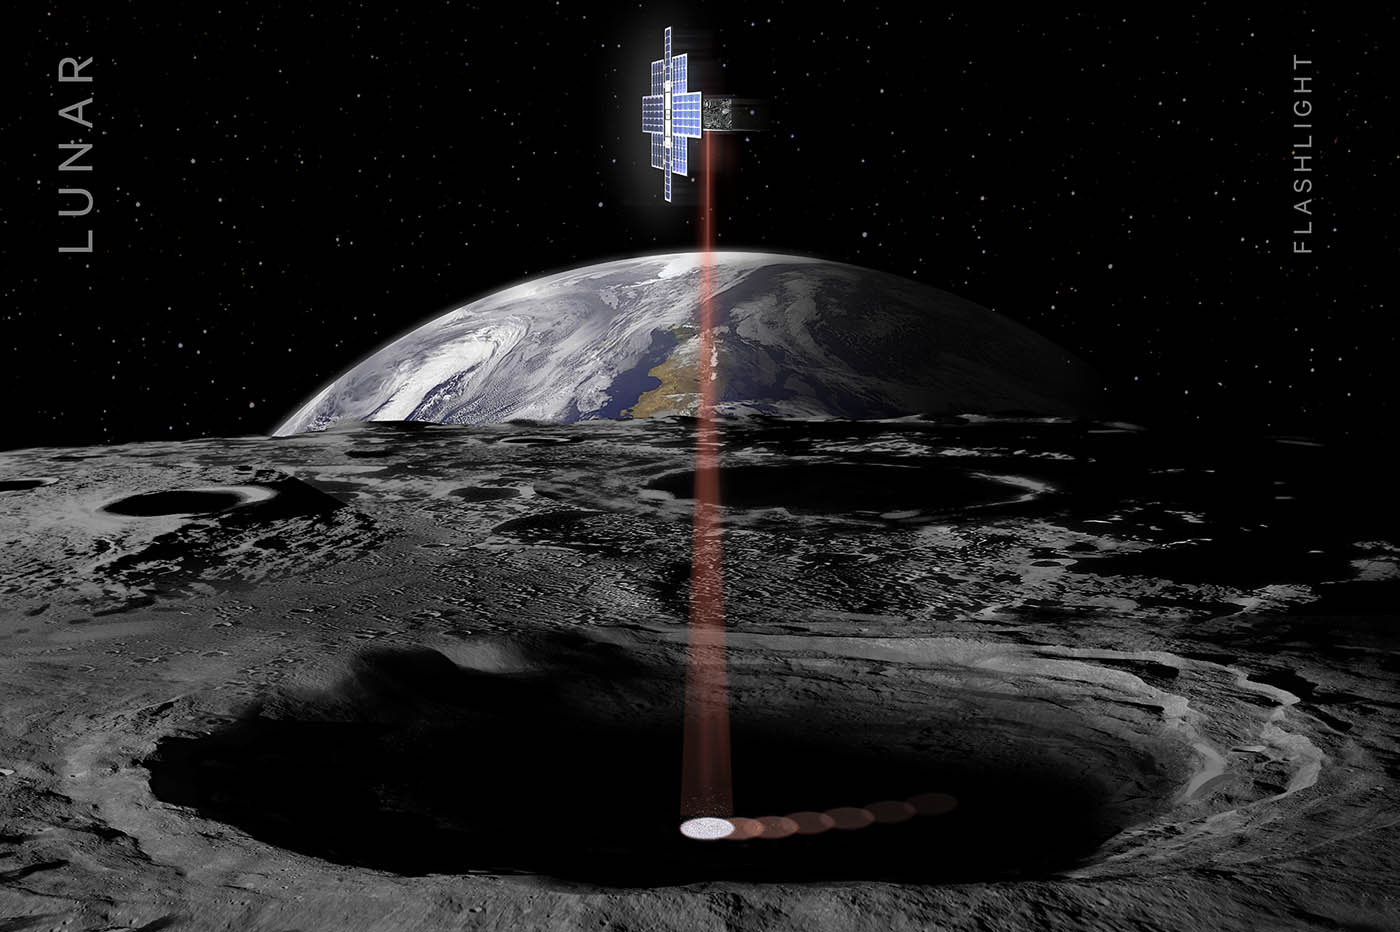 La colonisation de la Lune dépend de l’eau sur place et on en connaîtra bientôt les secrets